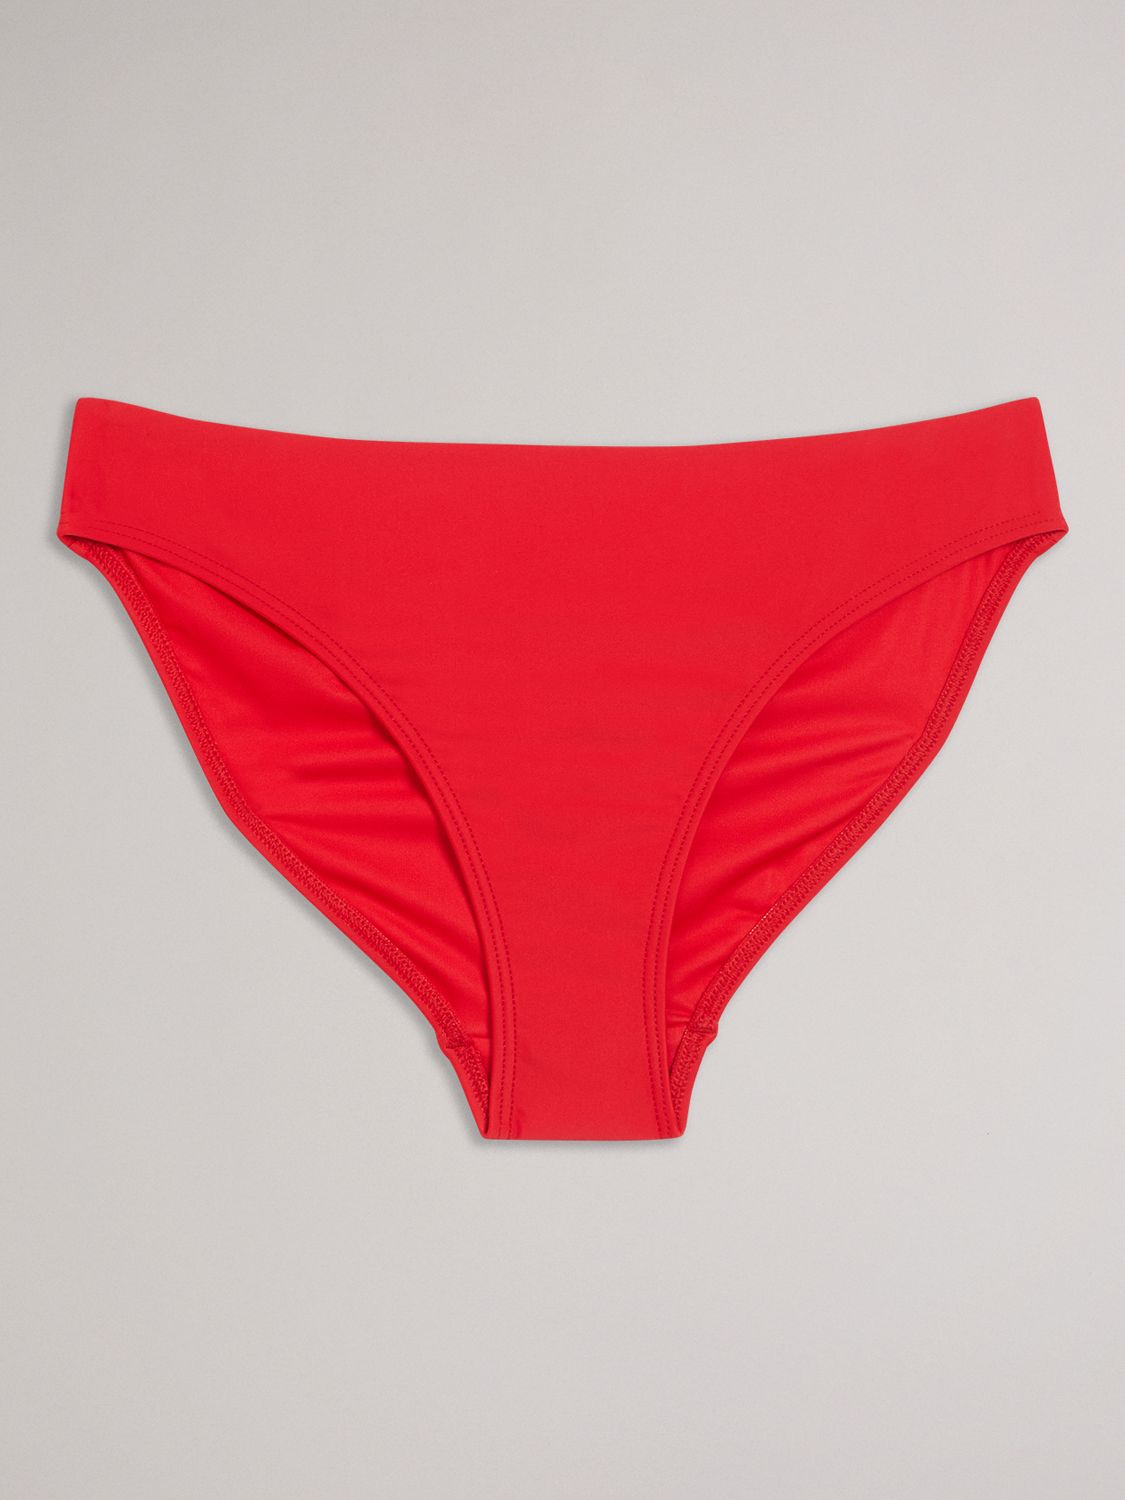 Ted Baker Lilynnn Bikini Bottoms, Red, 10